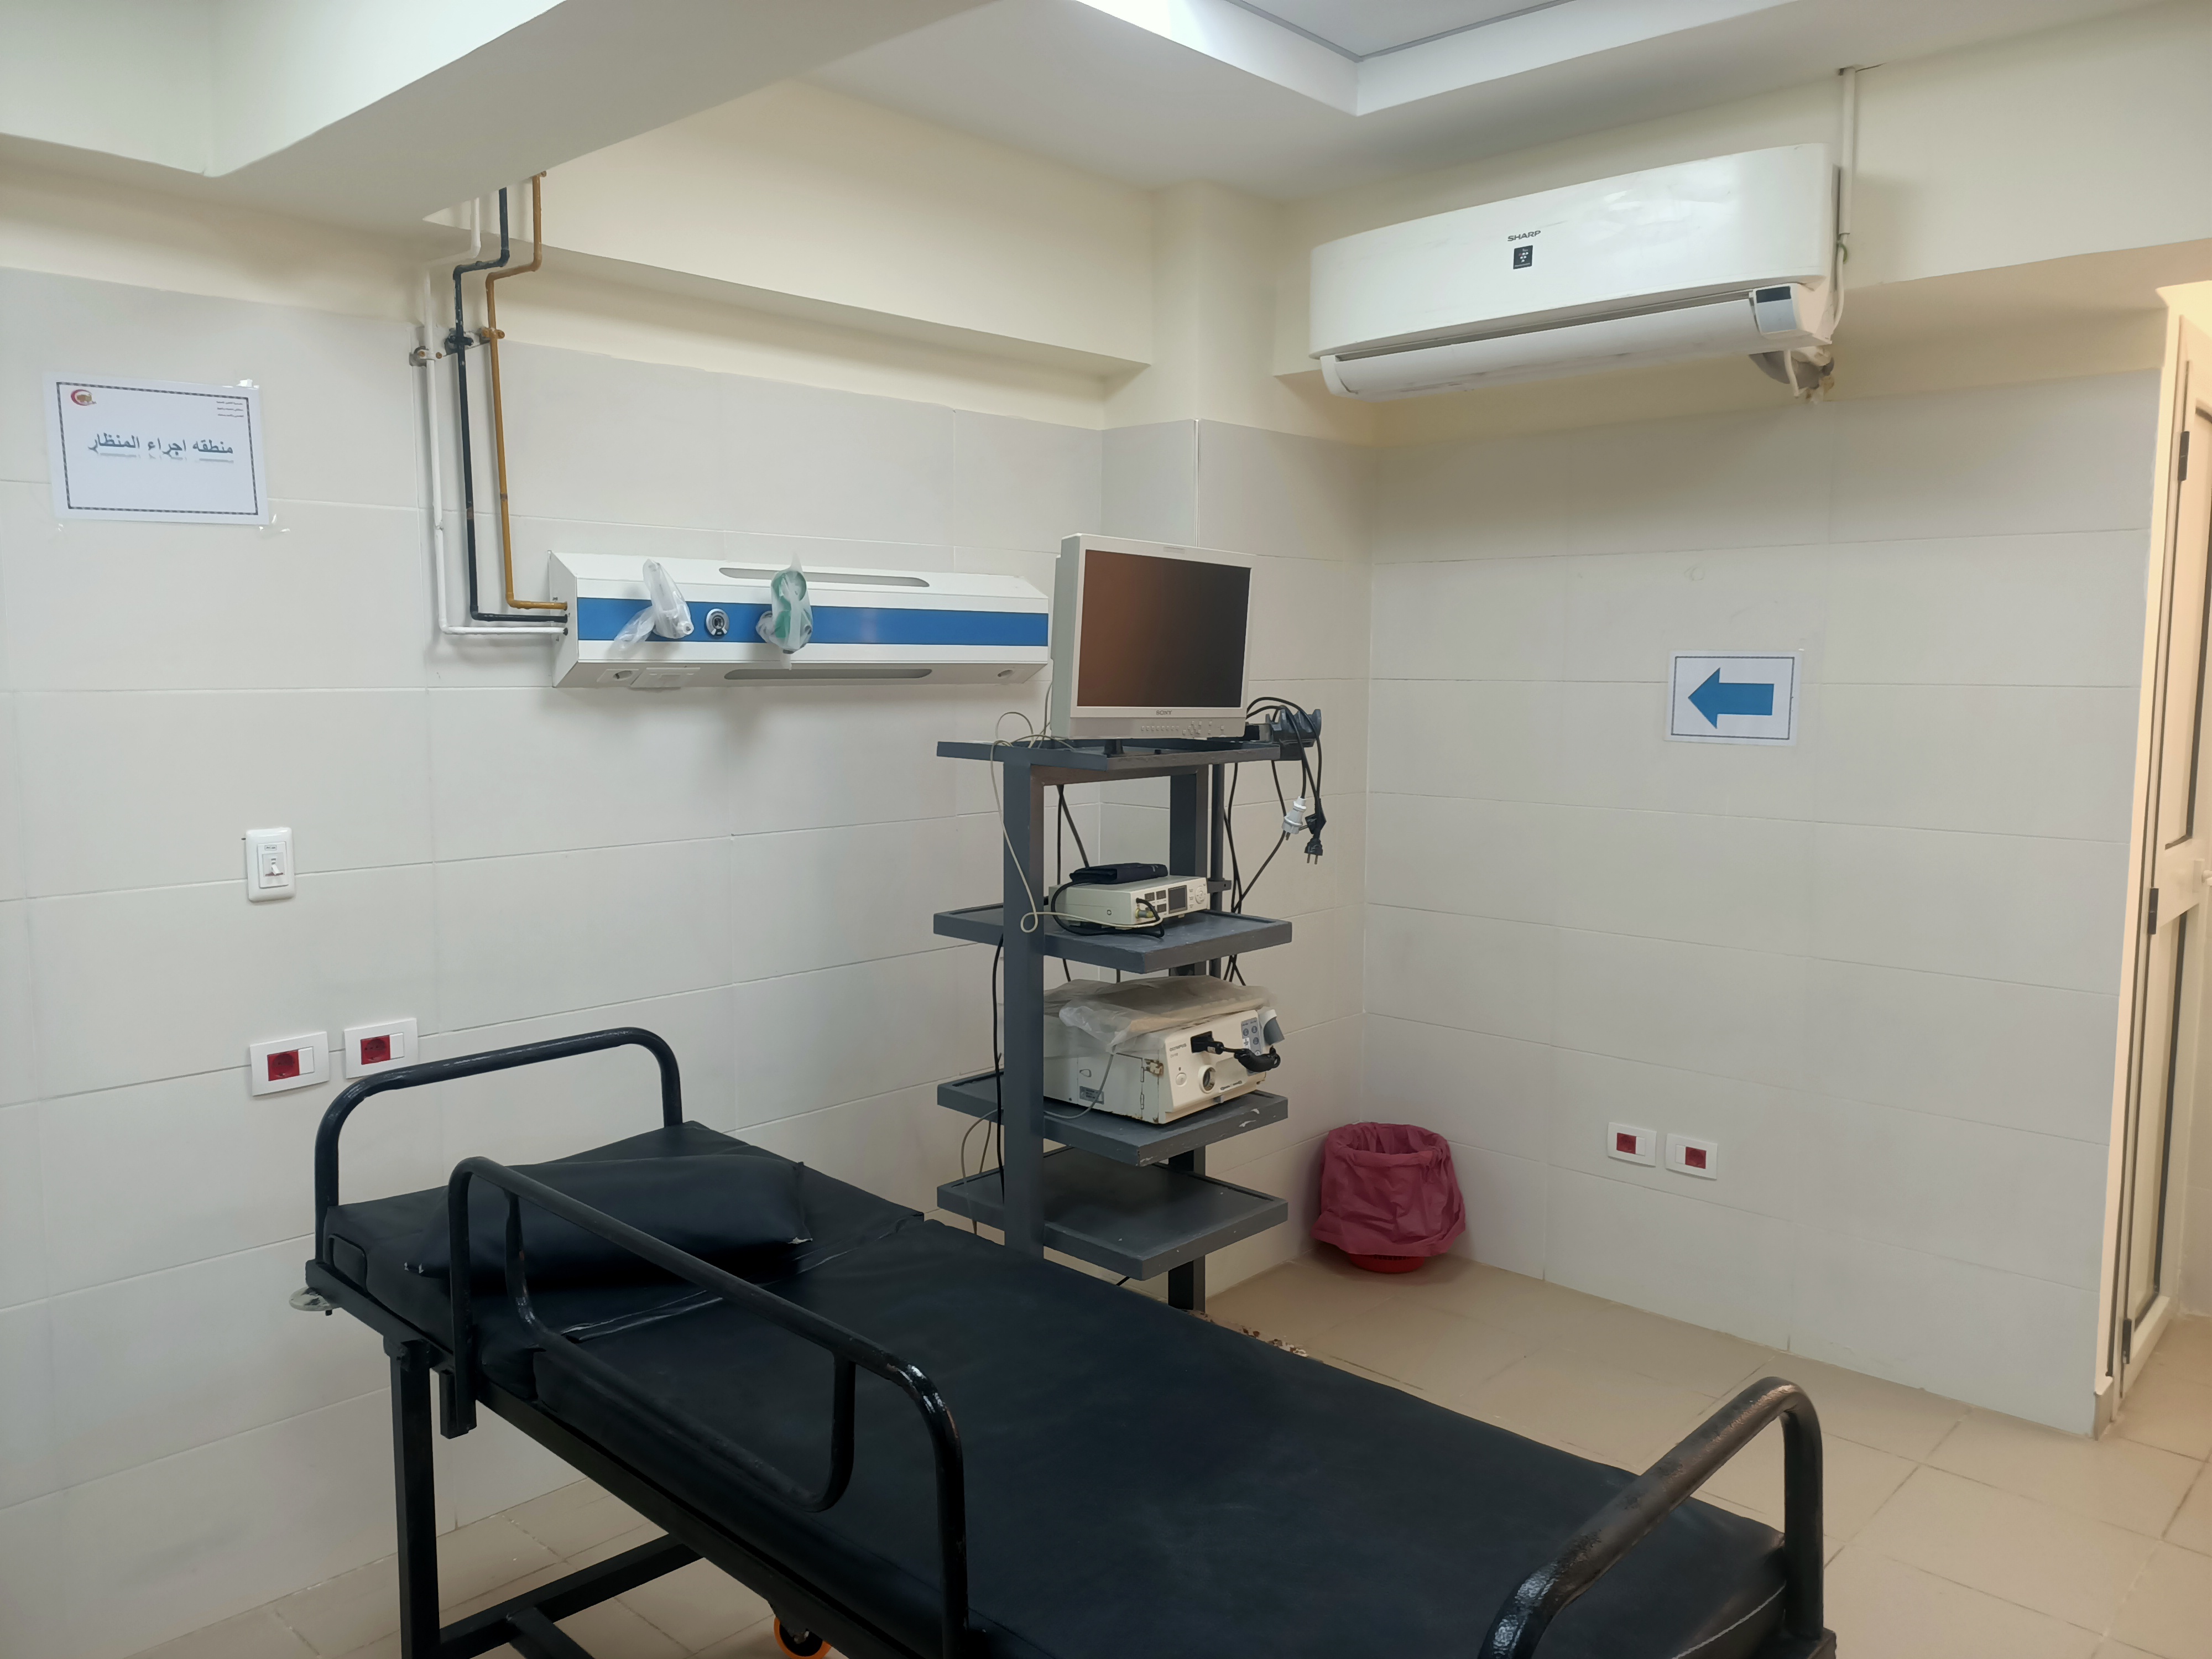  مستشفى حميات منوف تقدم أفضل خدمة صحية للمرضى  (3)